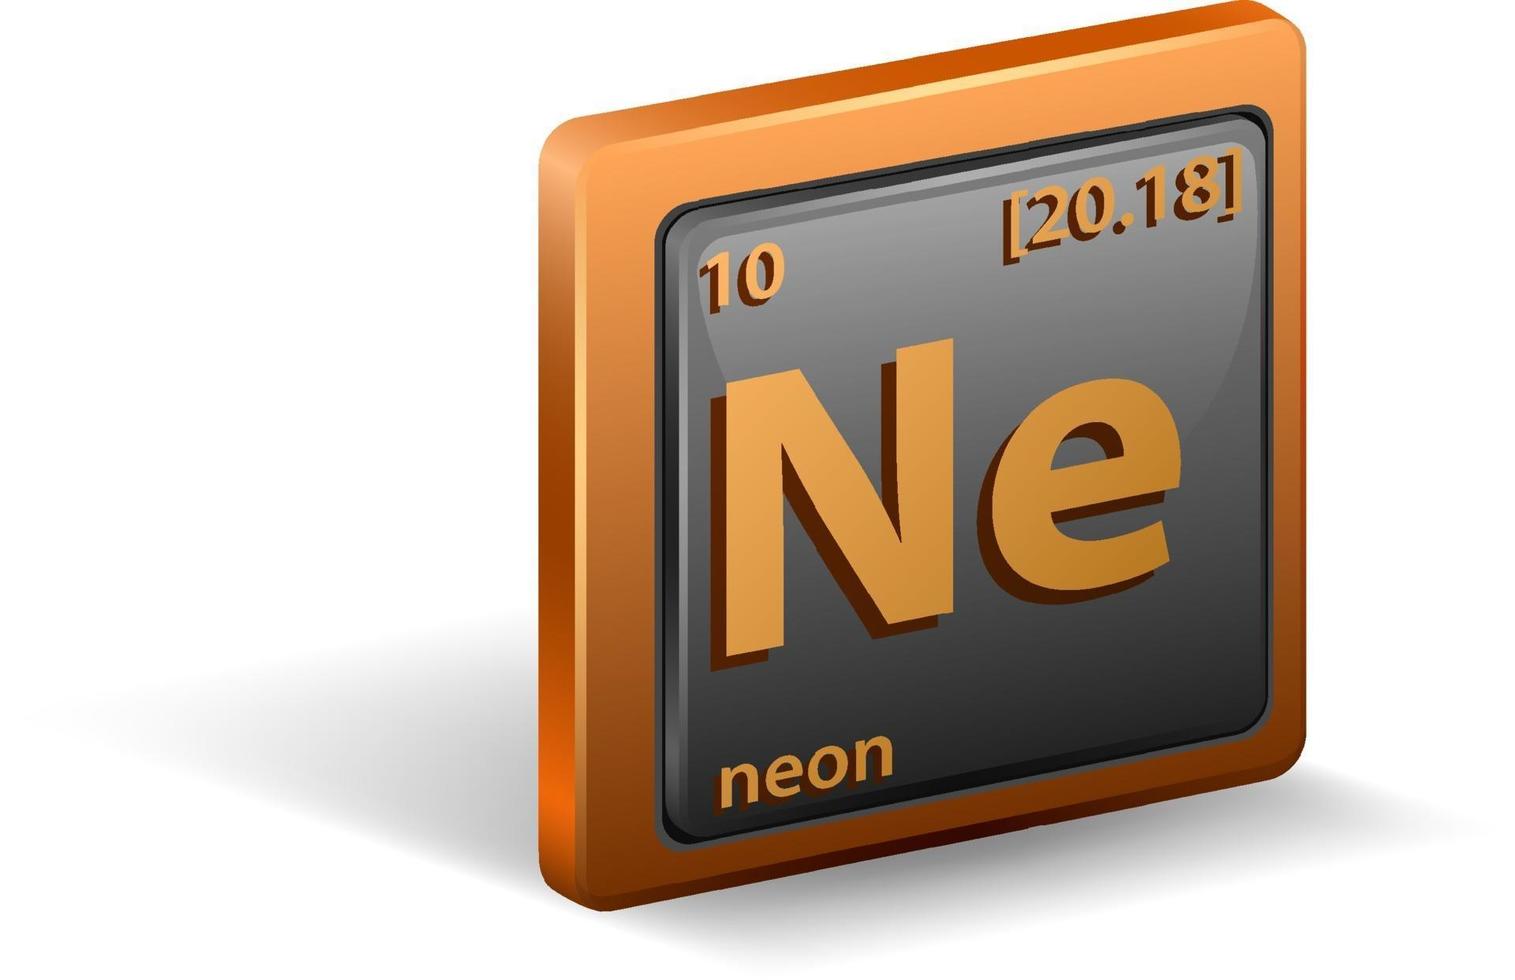 neon scheikundig element. chemisch symbool met atoomnummer en atoommassa. vector